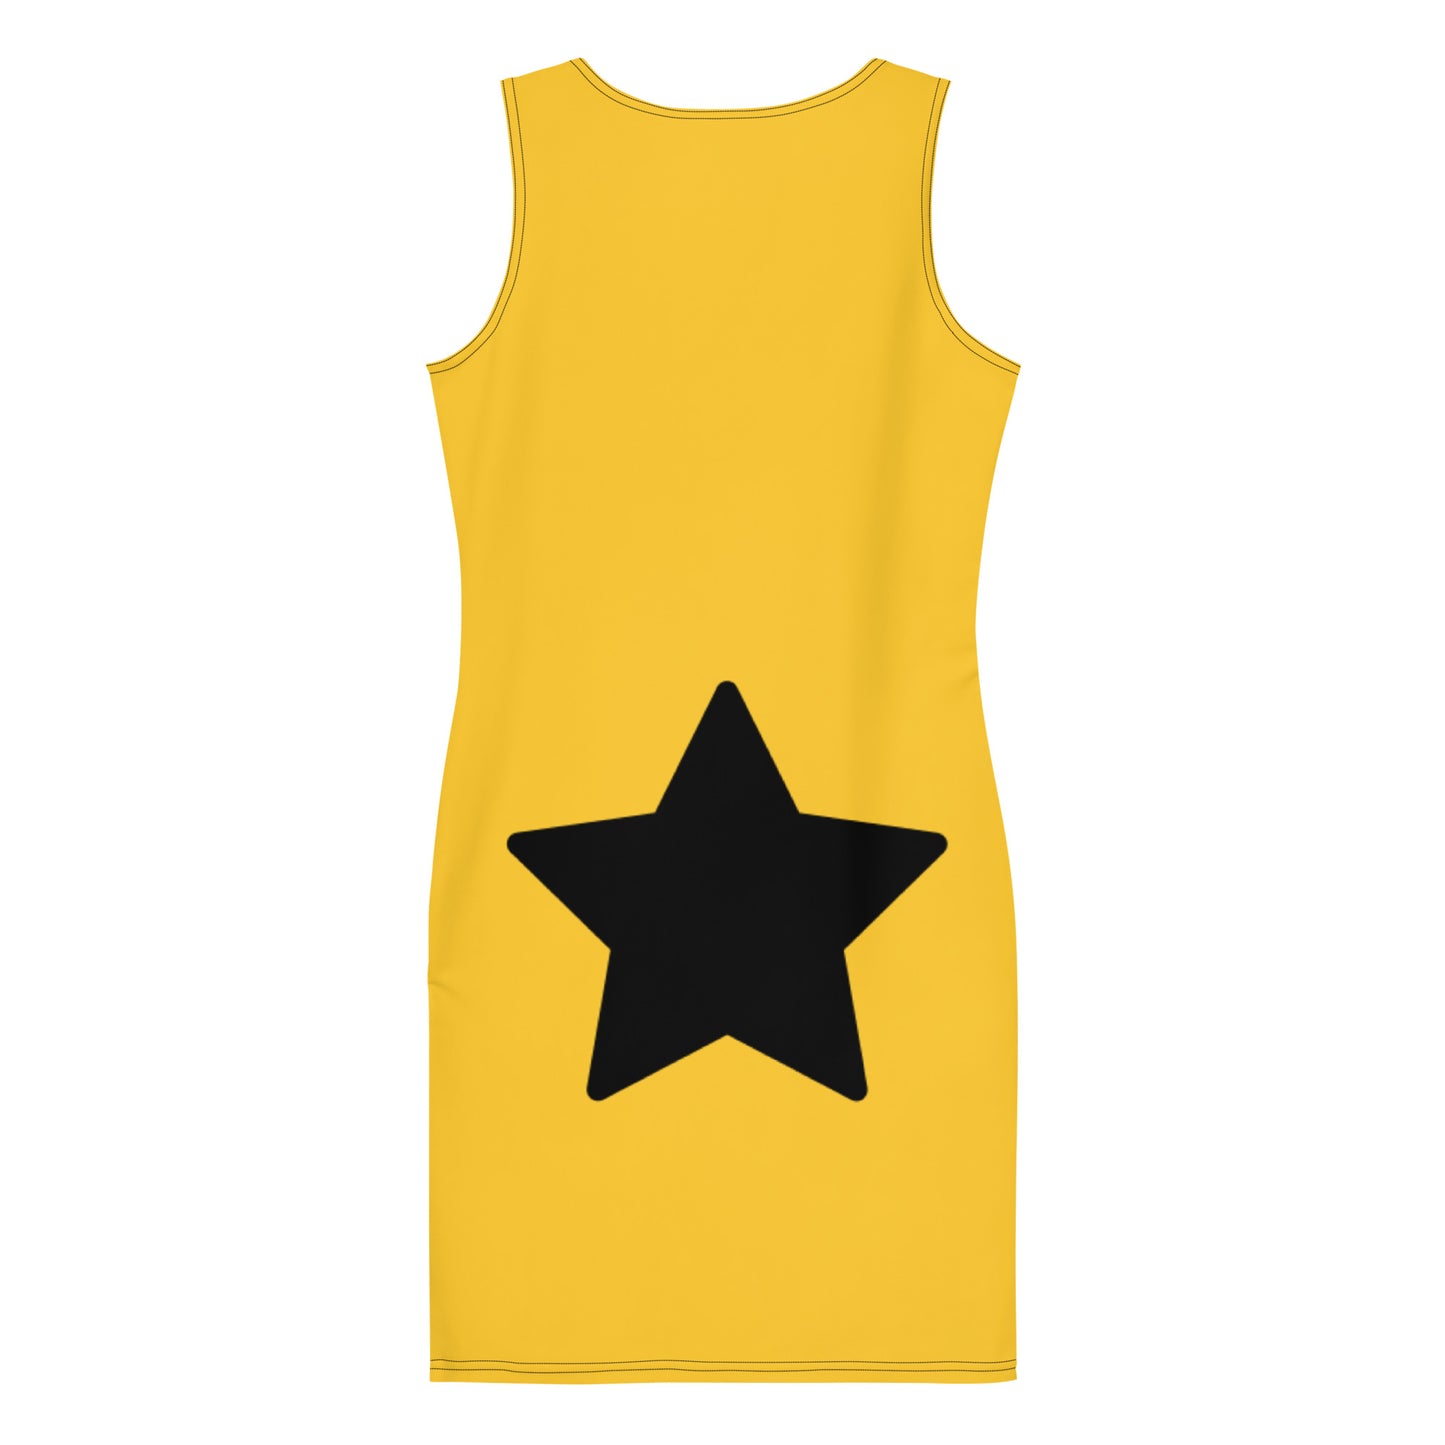 Black Star Yellow Mini Dress